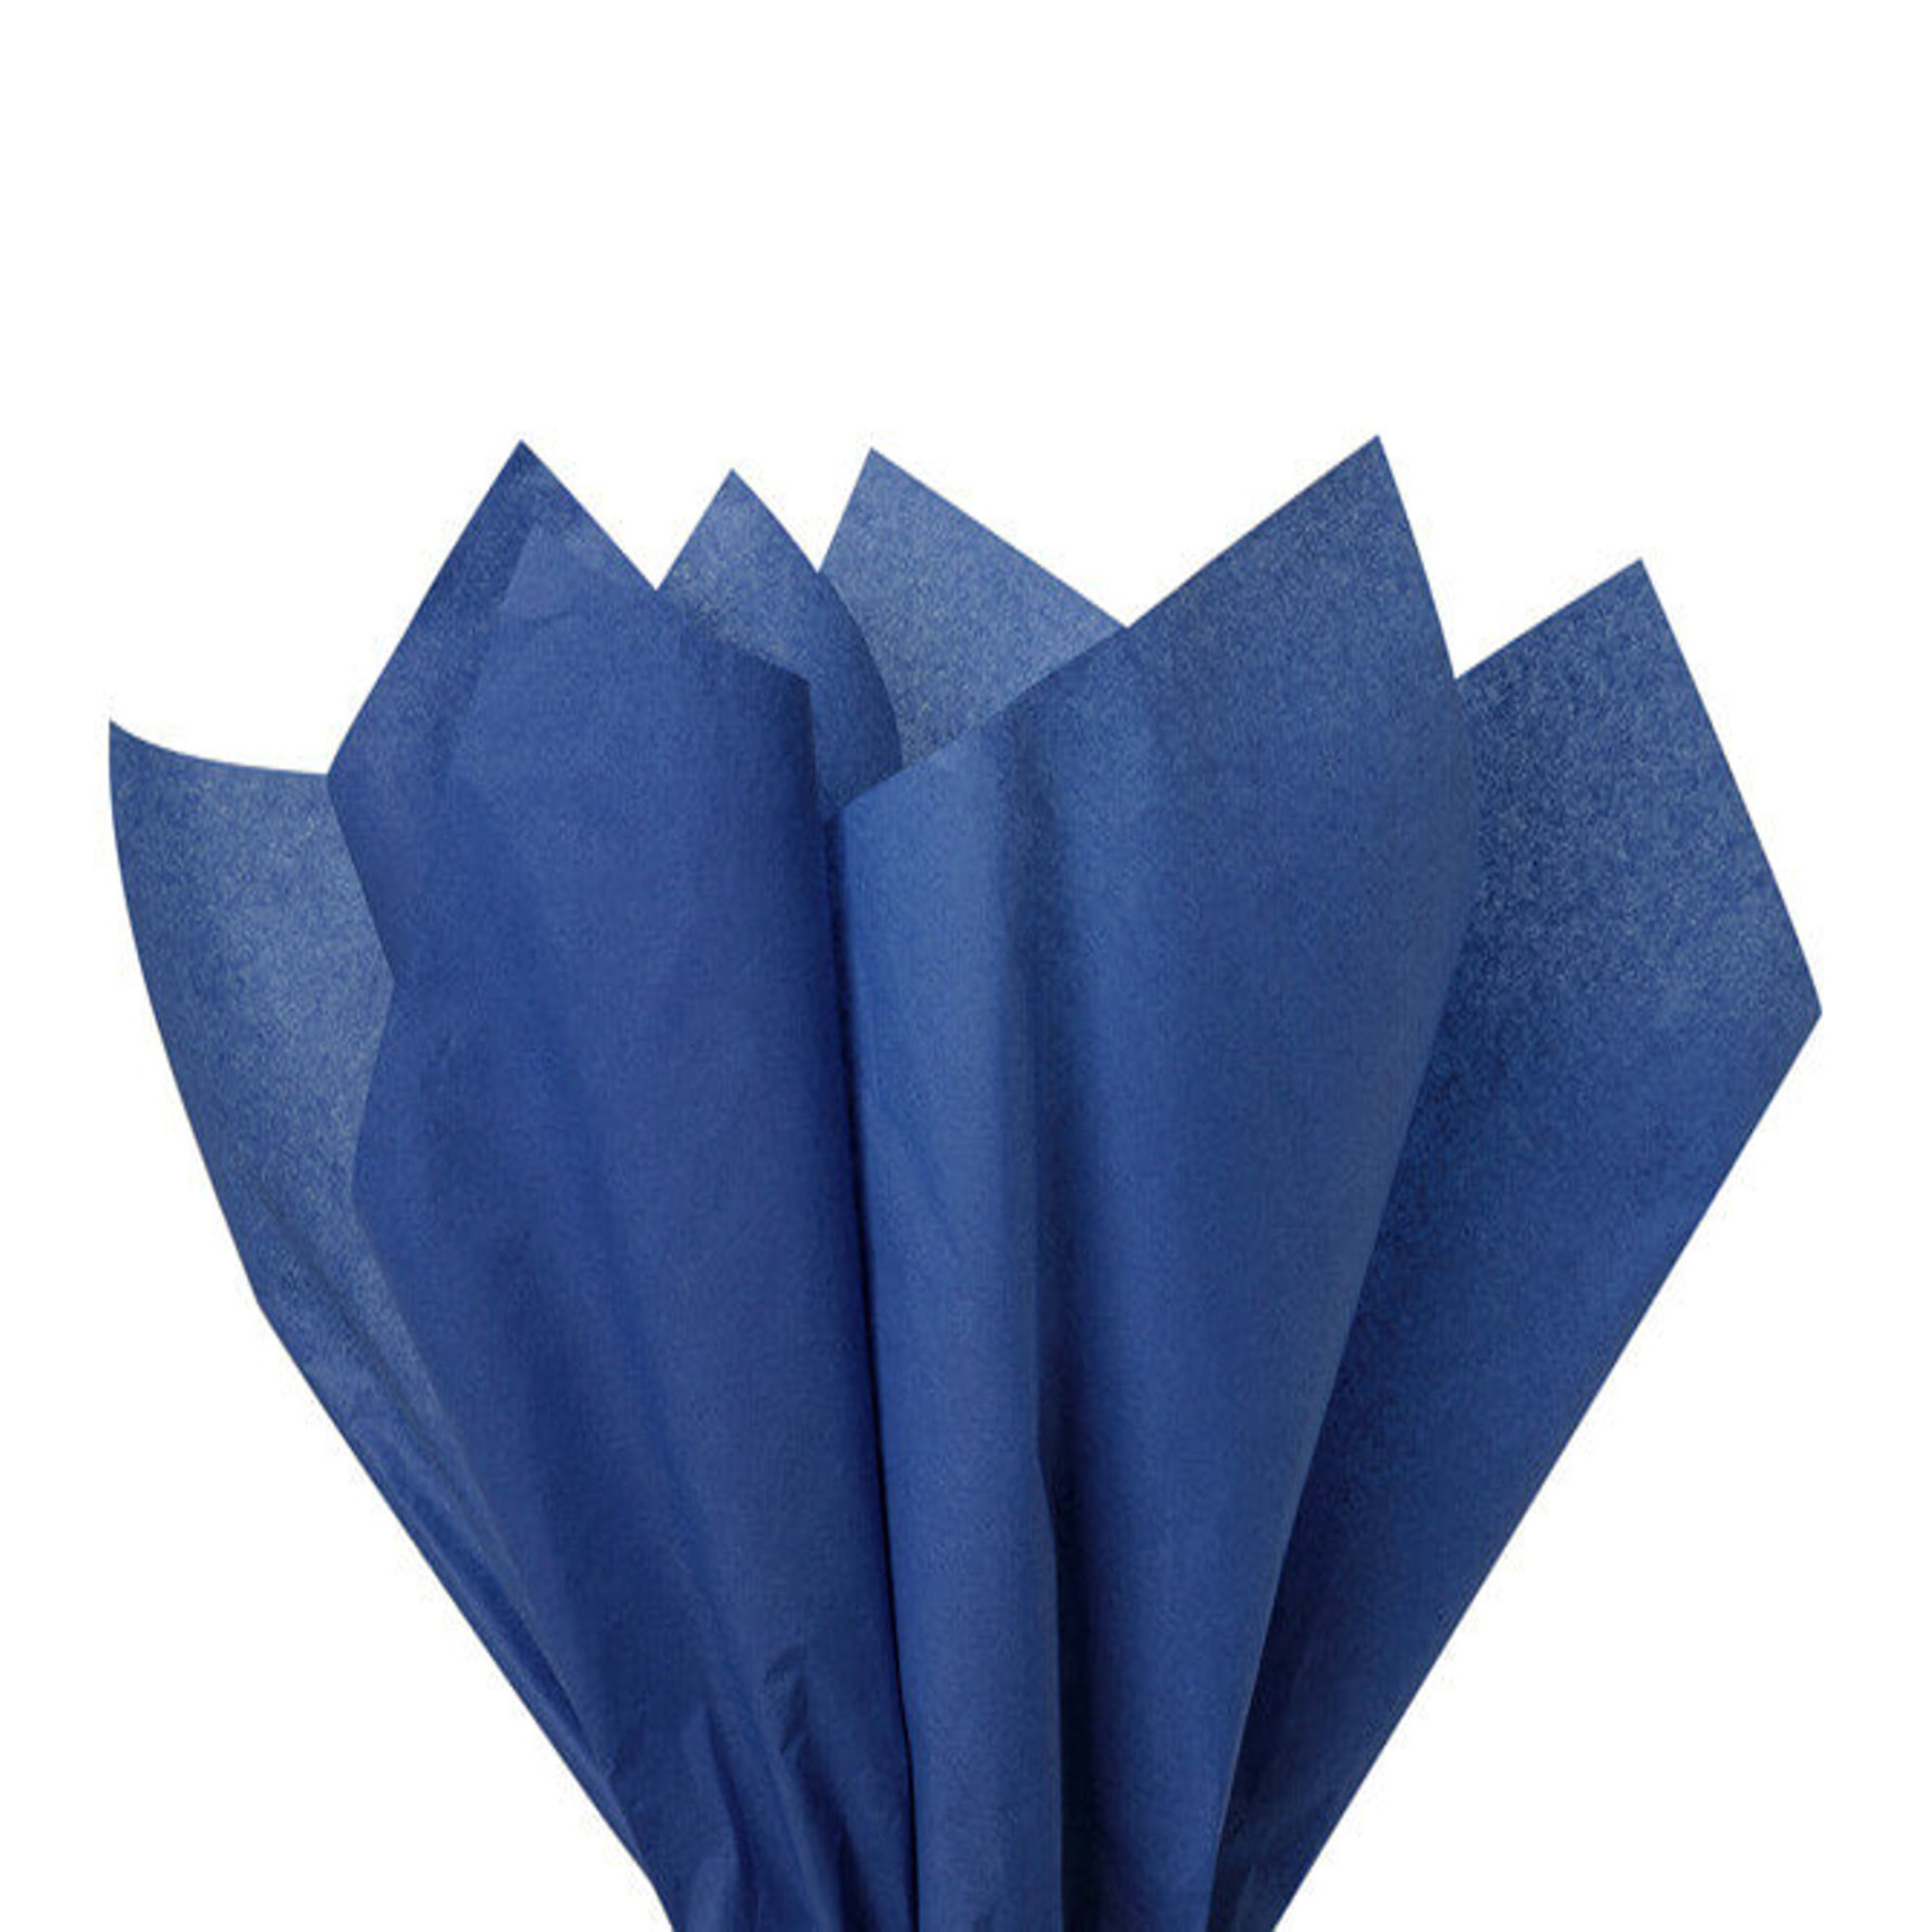 Navy Blue Economy Tissue Paper